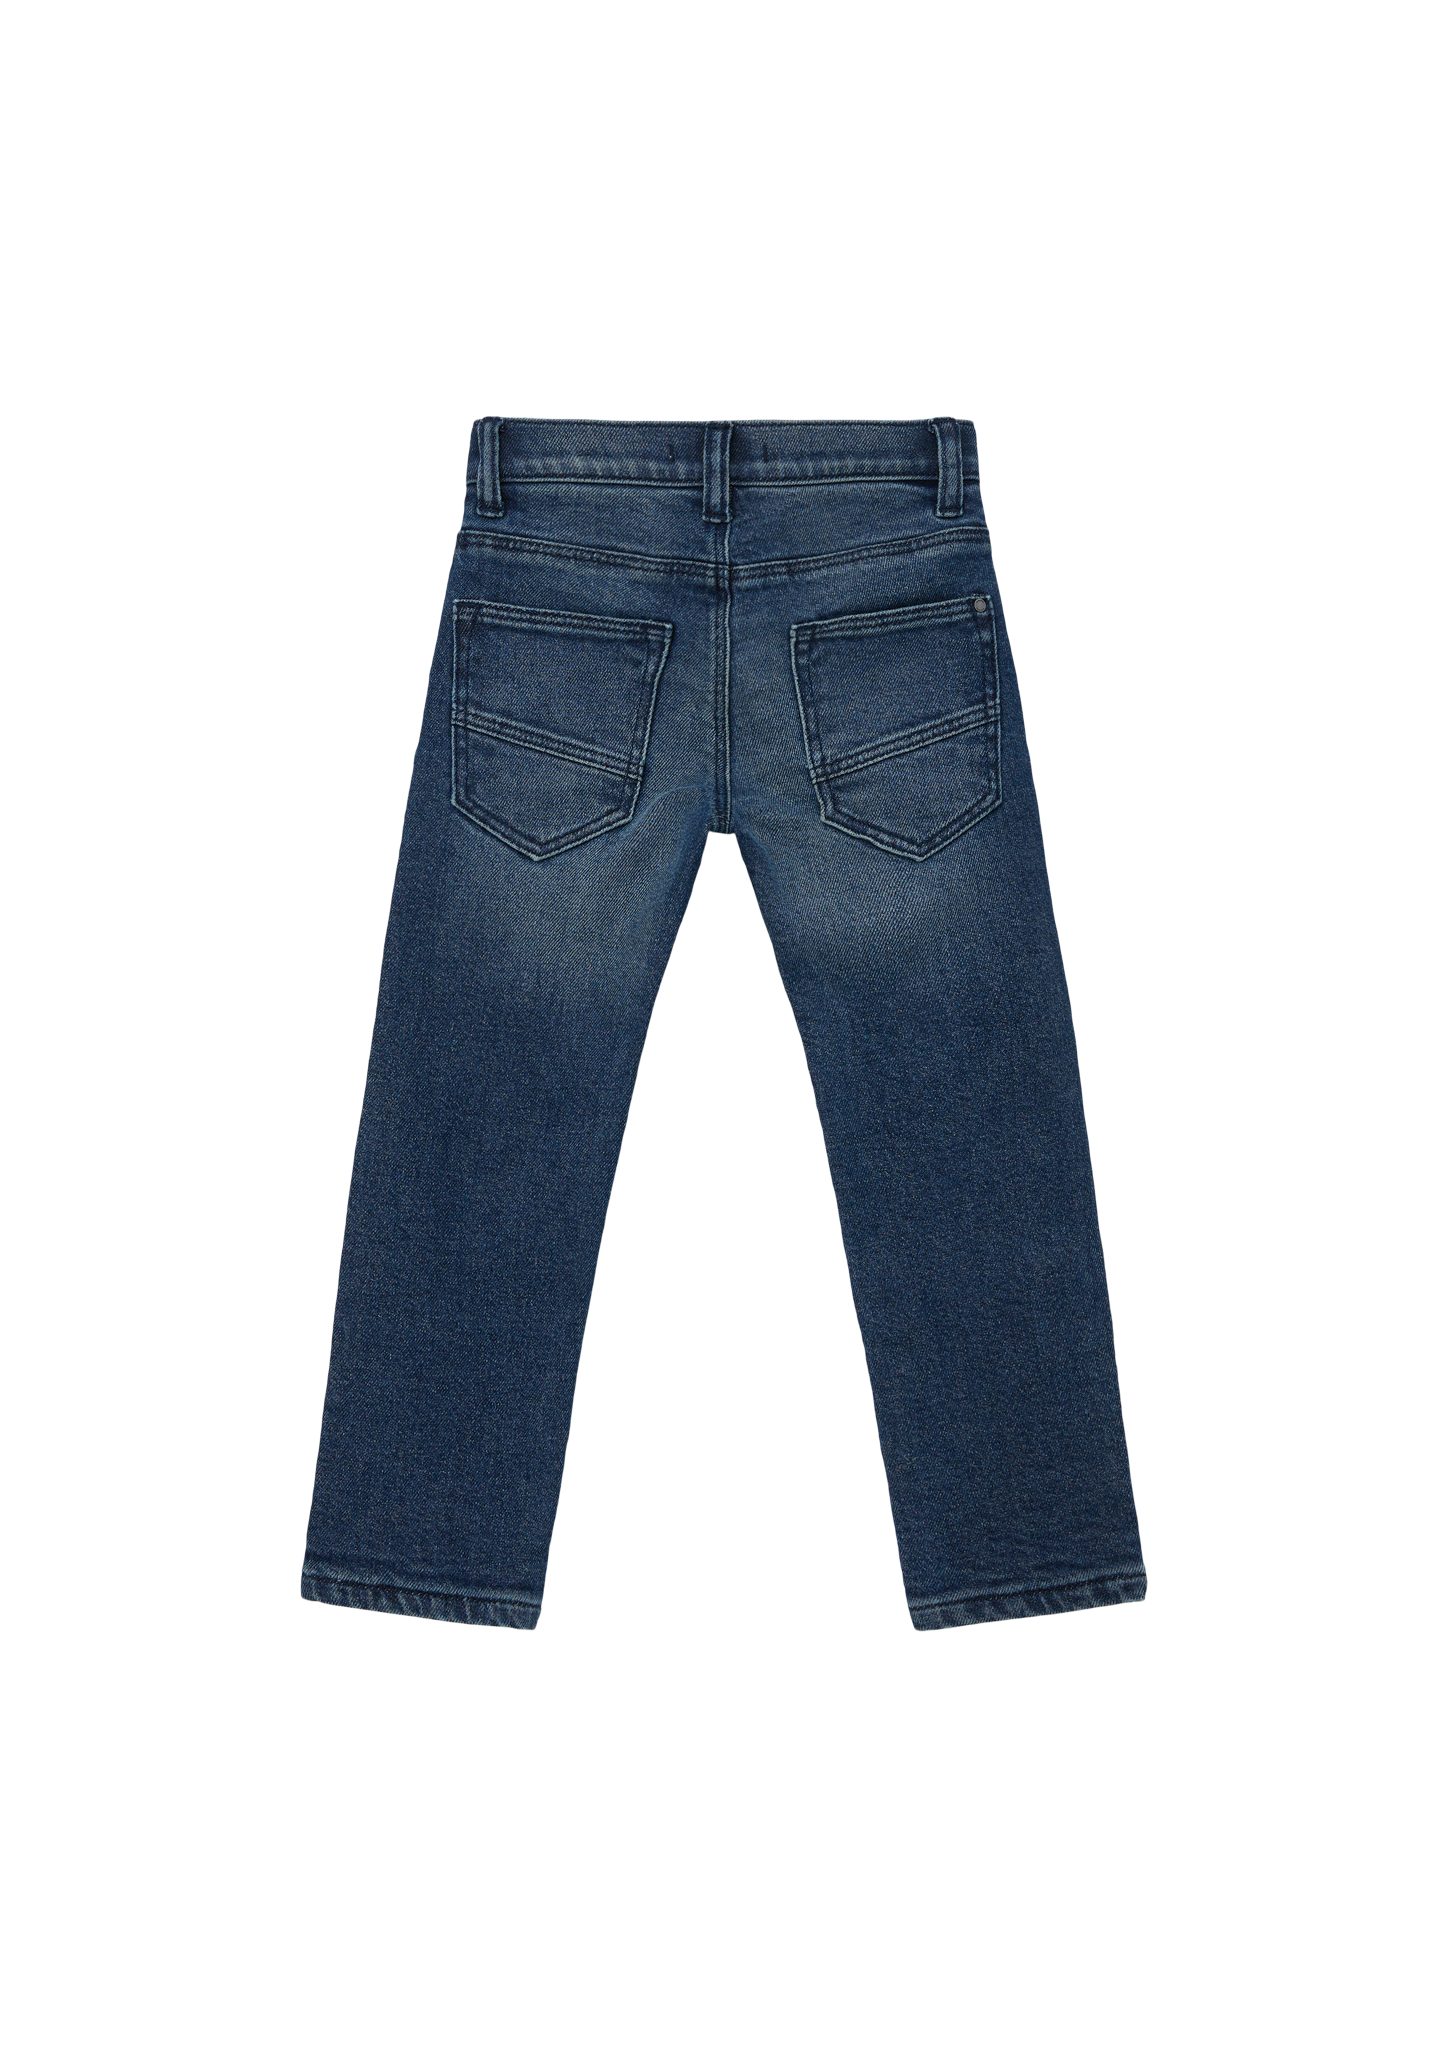 s.Oliver Junior s.Oliver Fit / Waschung Regular / Leg Rise / Straight Pelle Jeans Gefütterte Mid 5-Pocket-Jeans